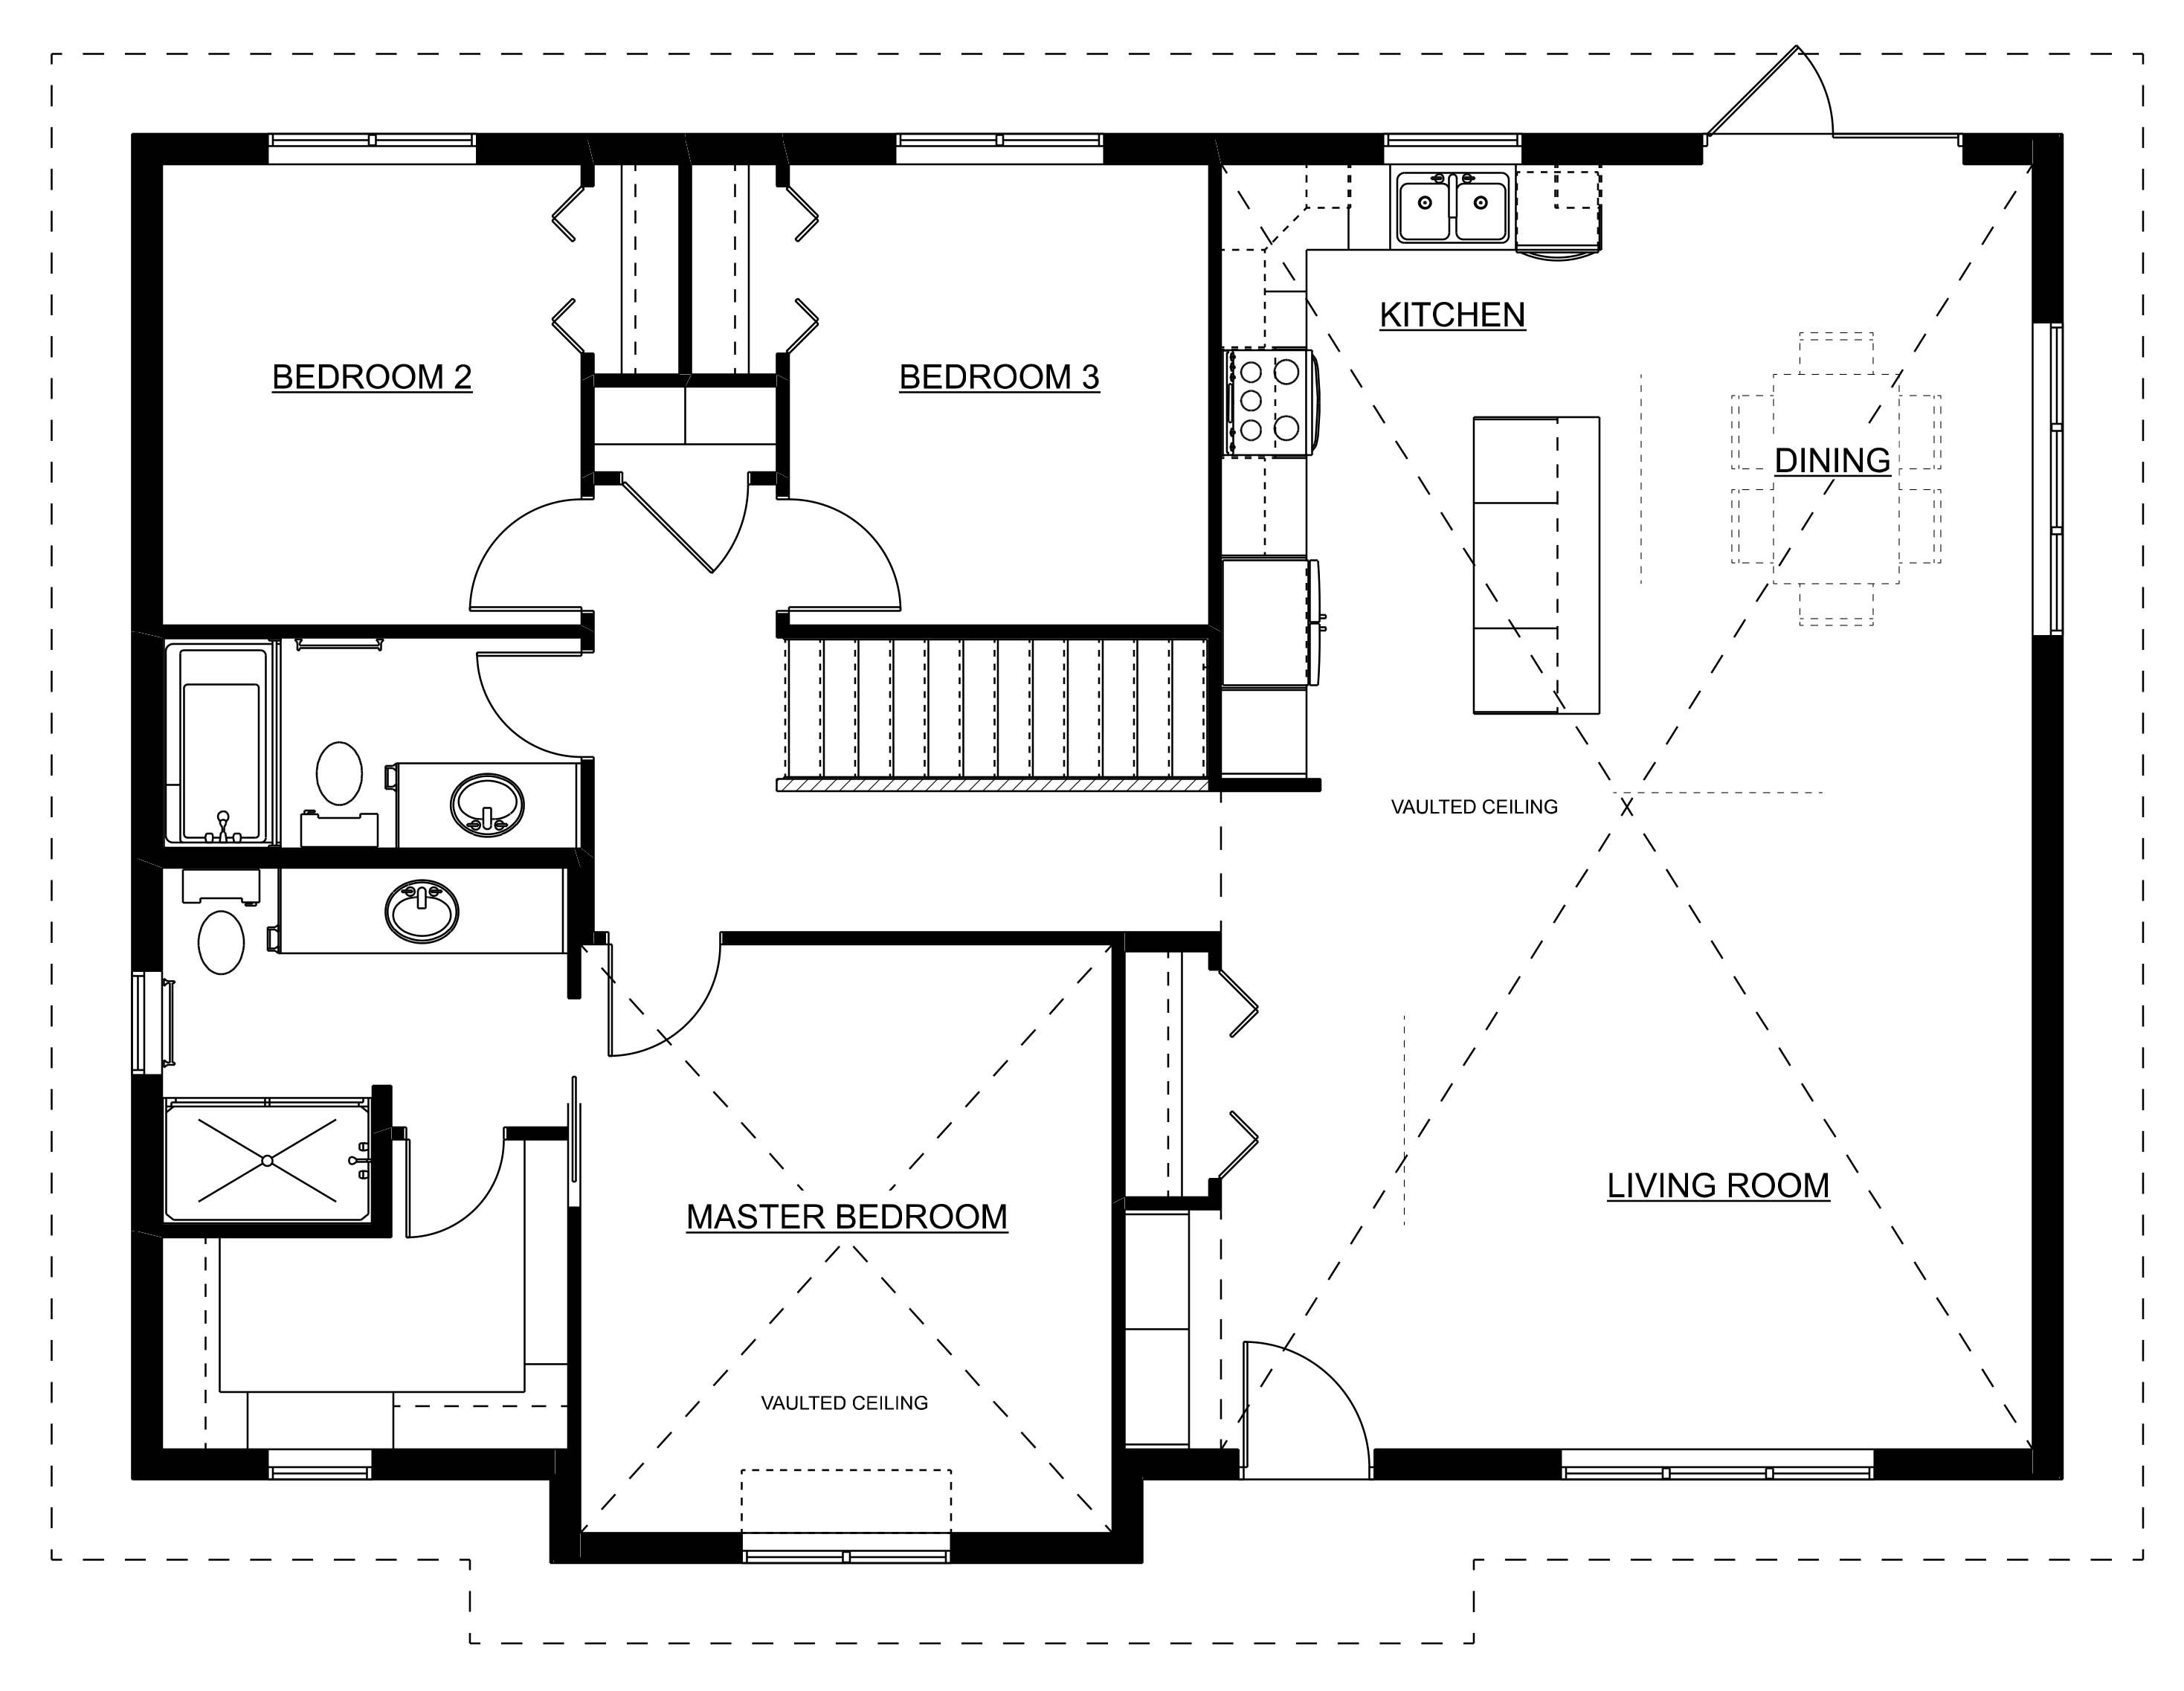 lockwood modular house plan nelson homes prefab homes.jpg